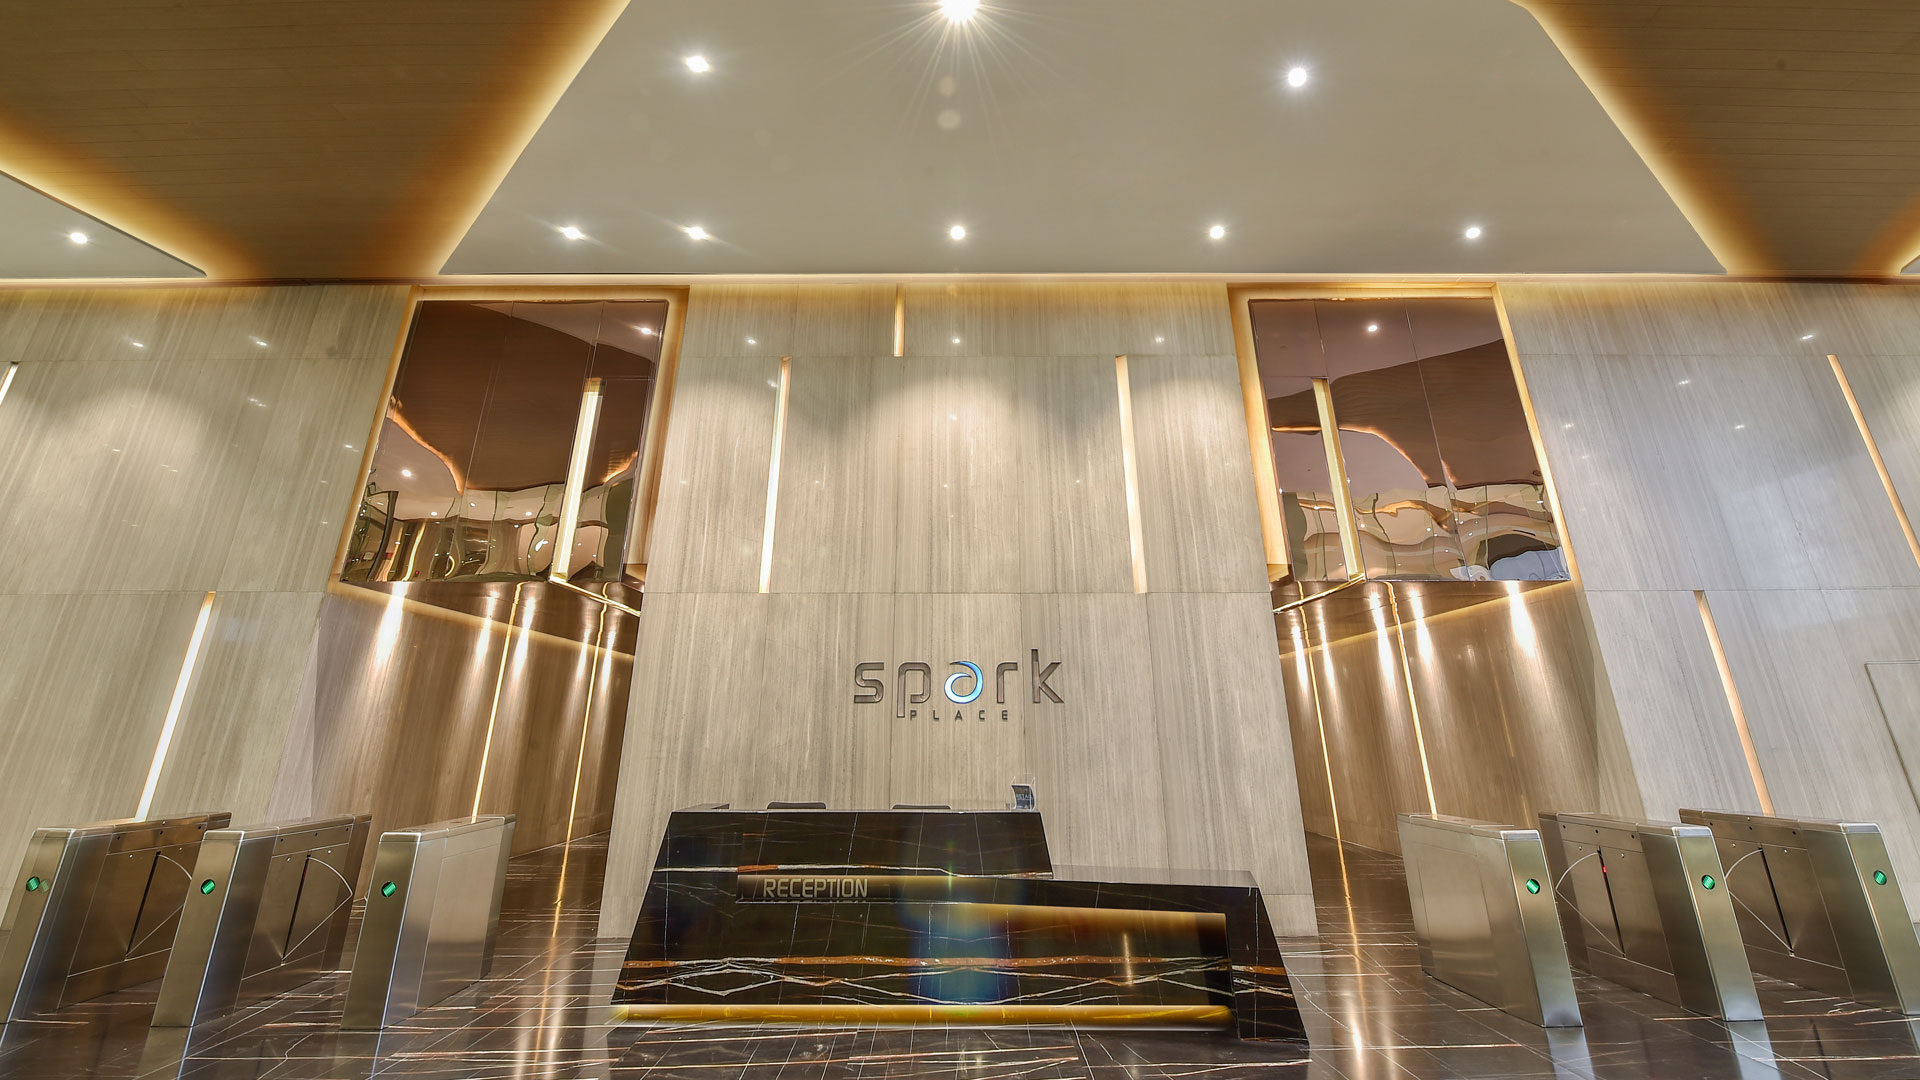 Spark-Place-Cubao-Lobby-Area-HD